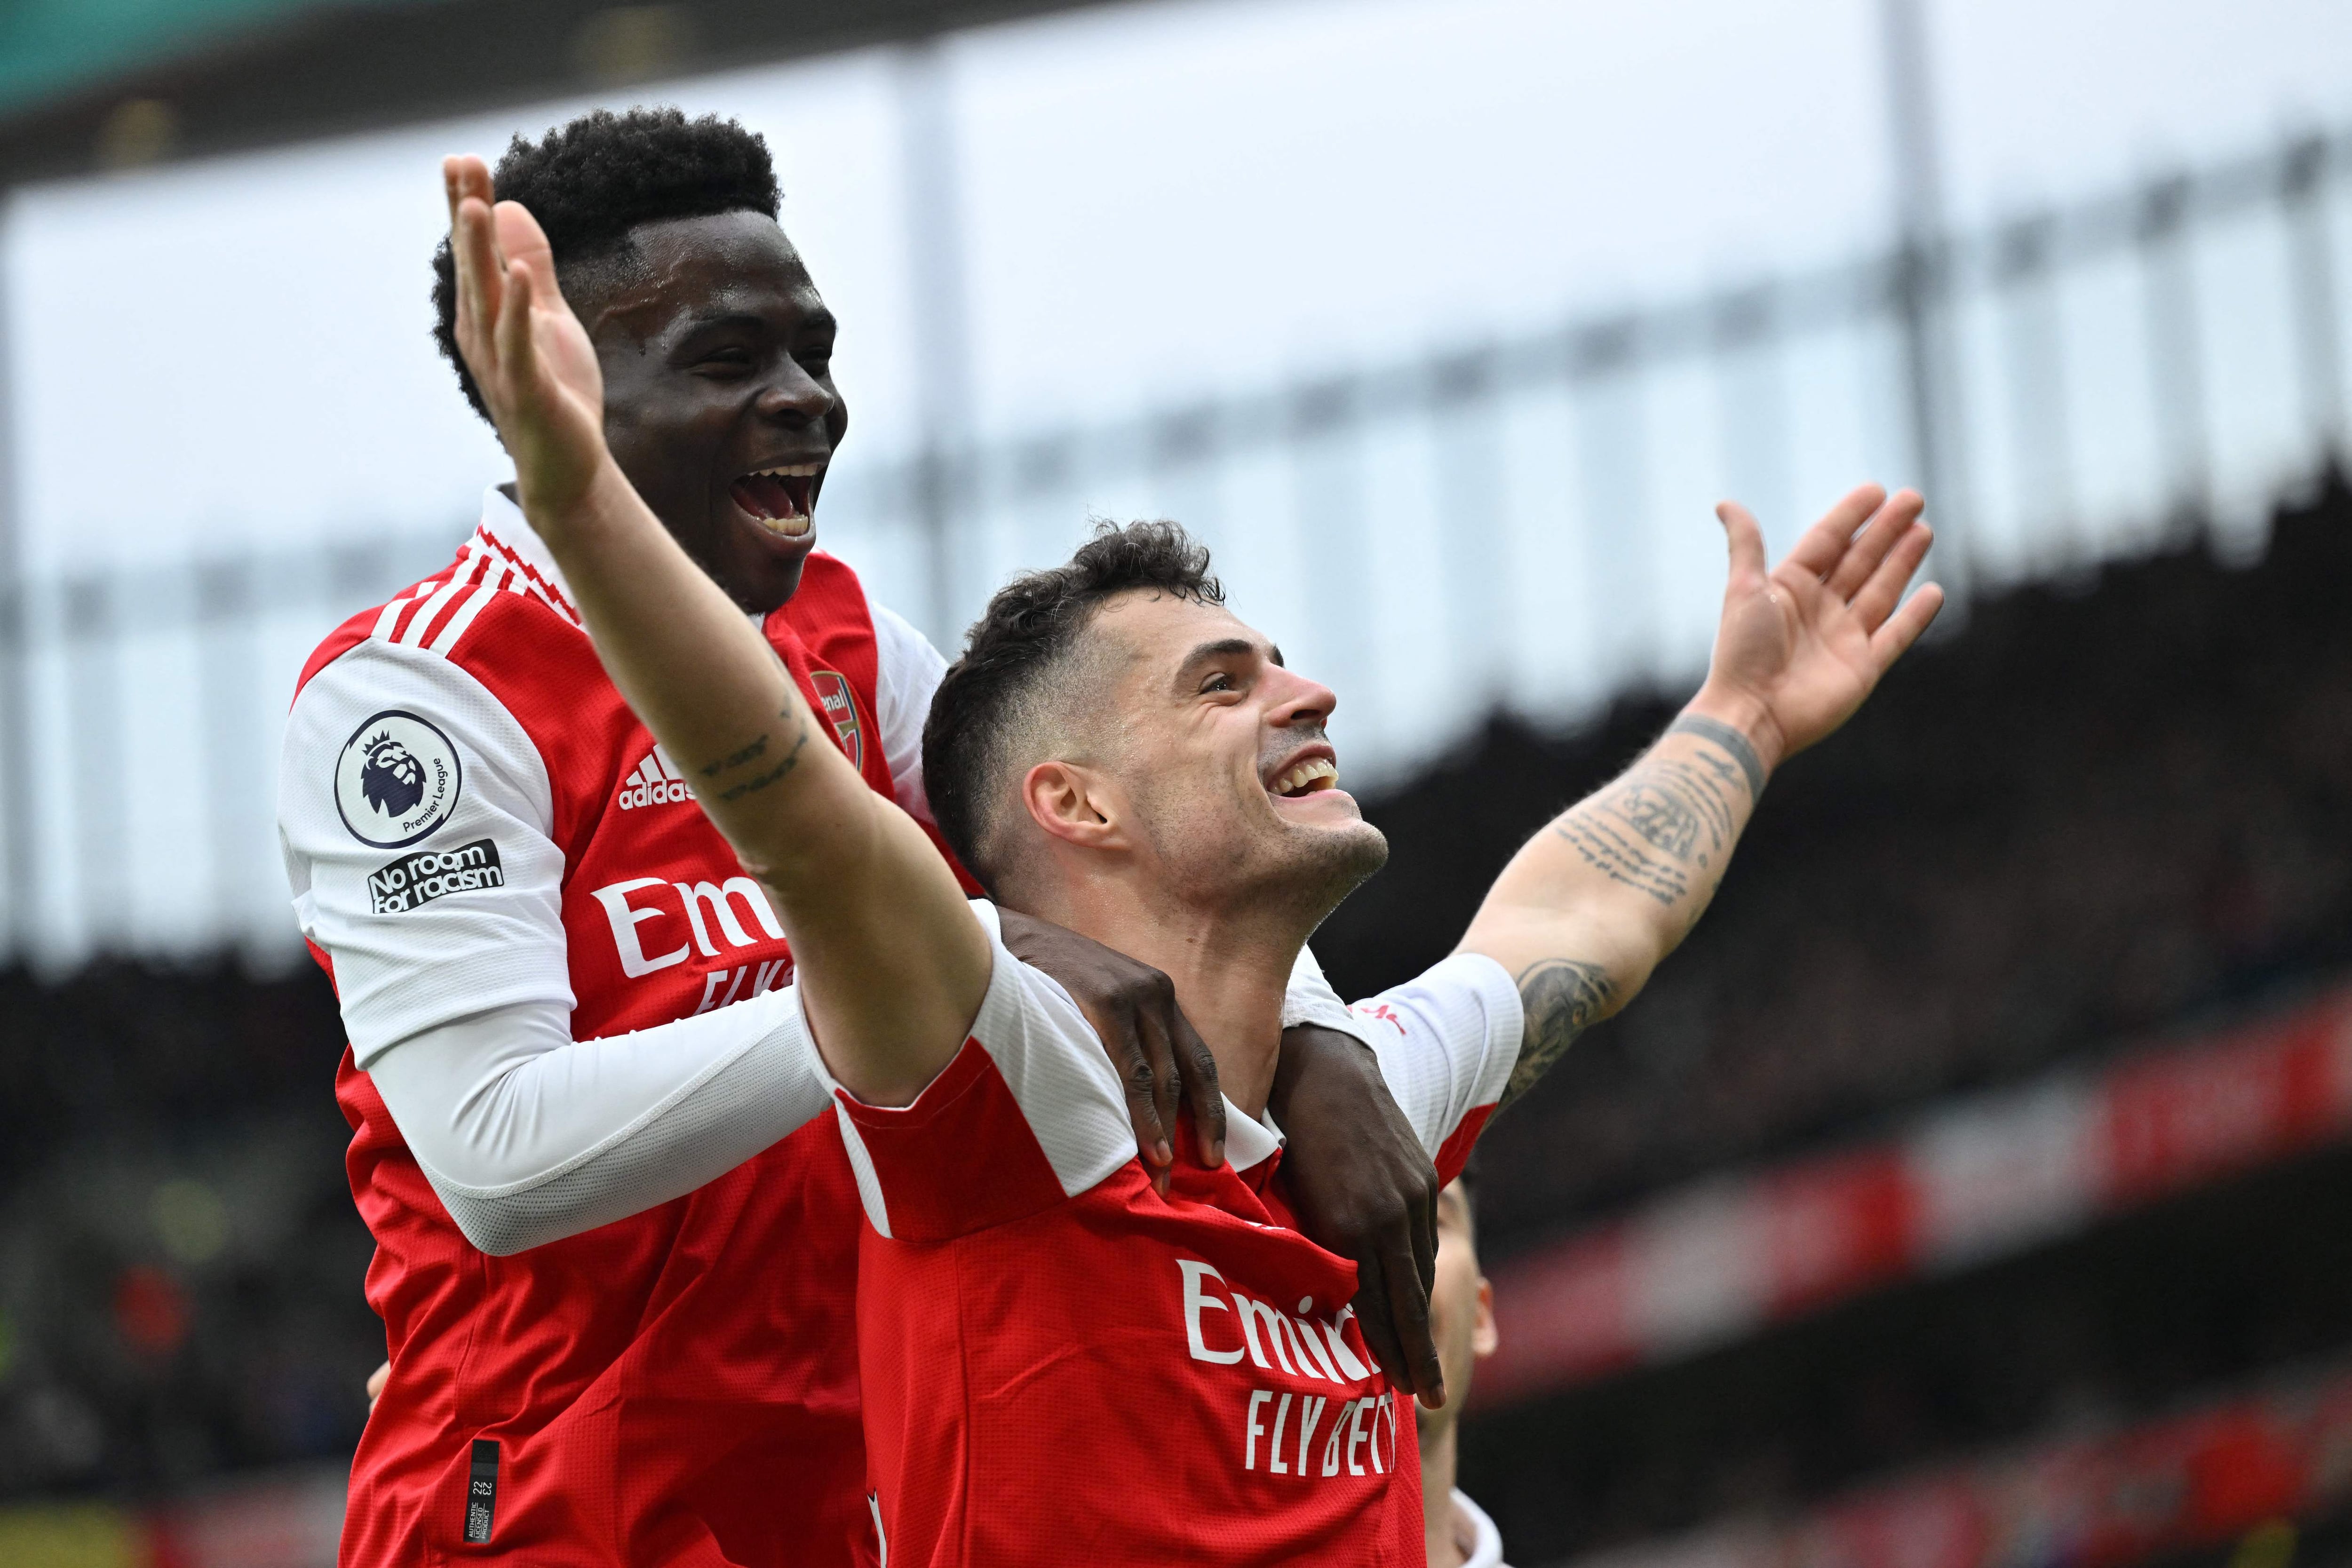 El Arsenal no cede en la cima de la Premier League. Bukayo Saka anotó el segundo gol de su equipo, en la victoria 2-3 contra el Tottenham.